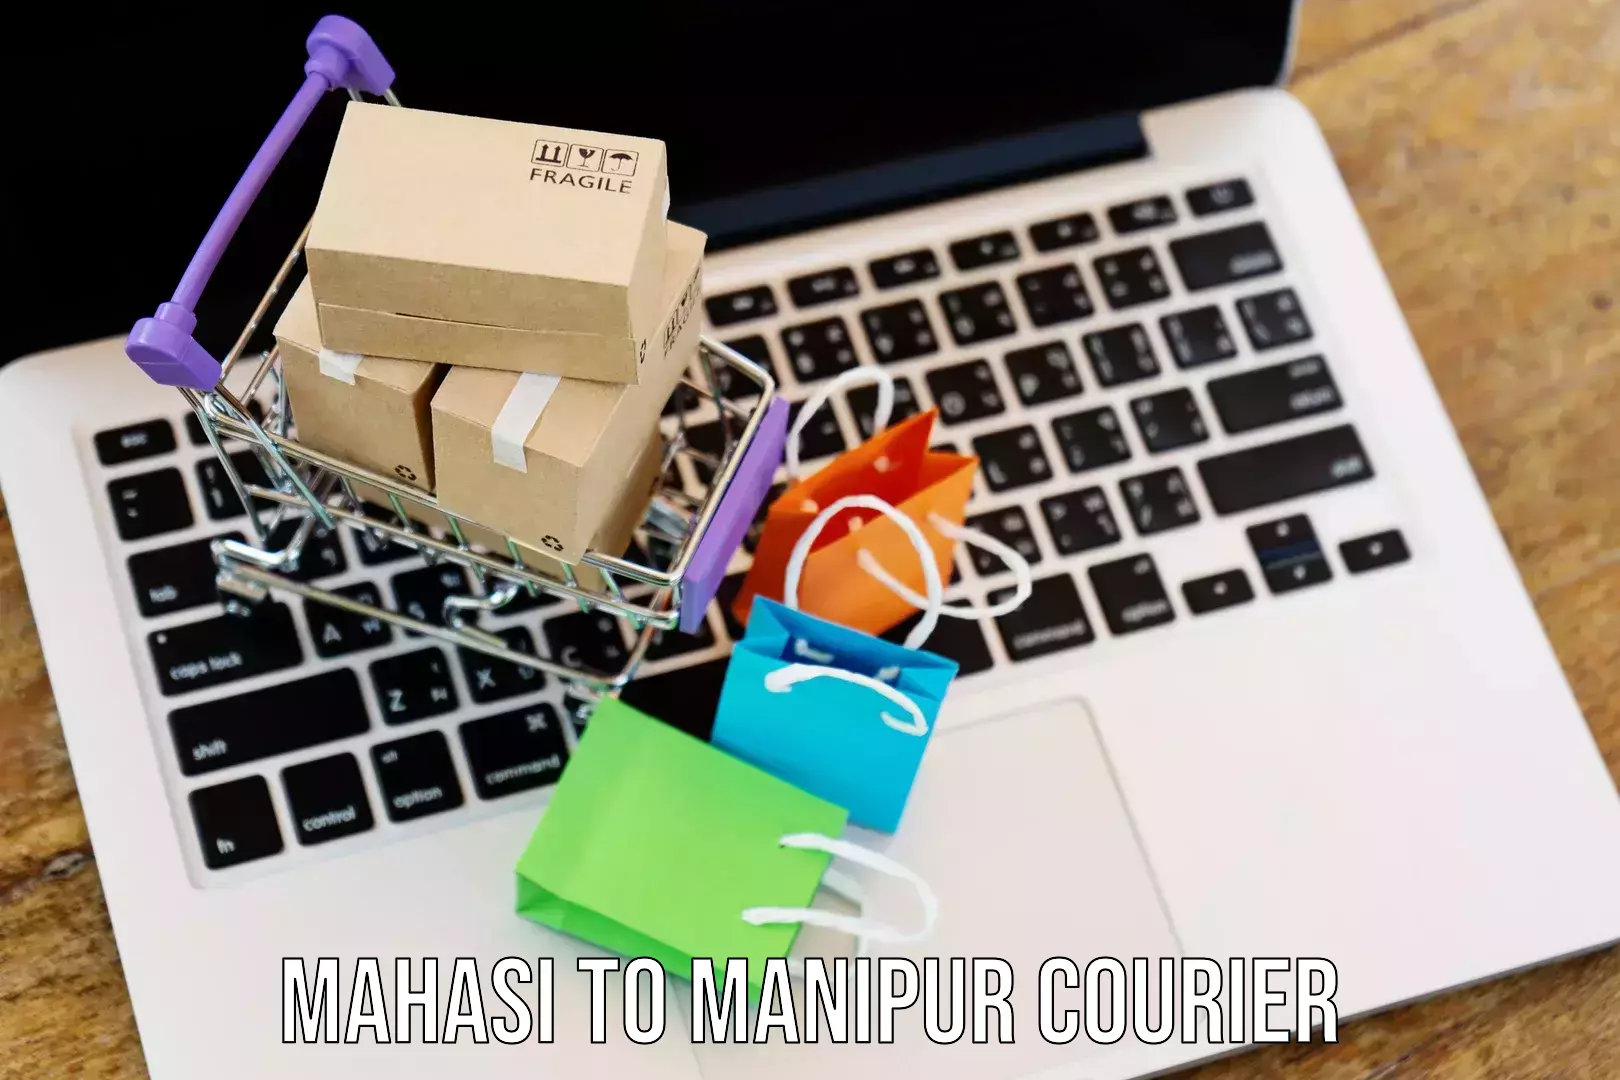 Digital courier platforms Mahasi to Manipur